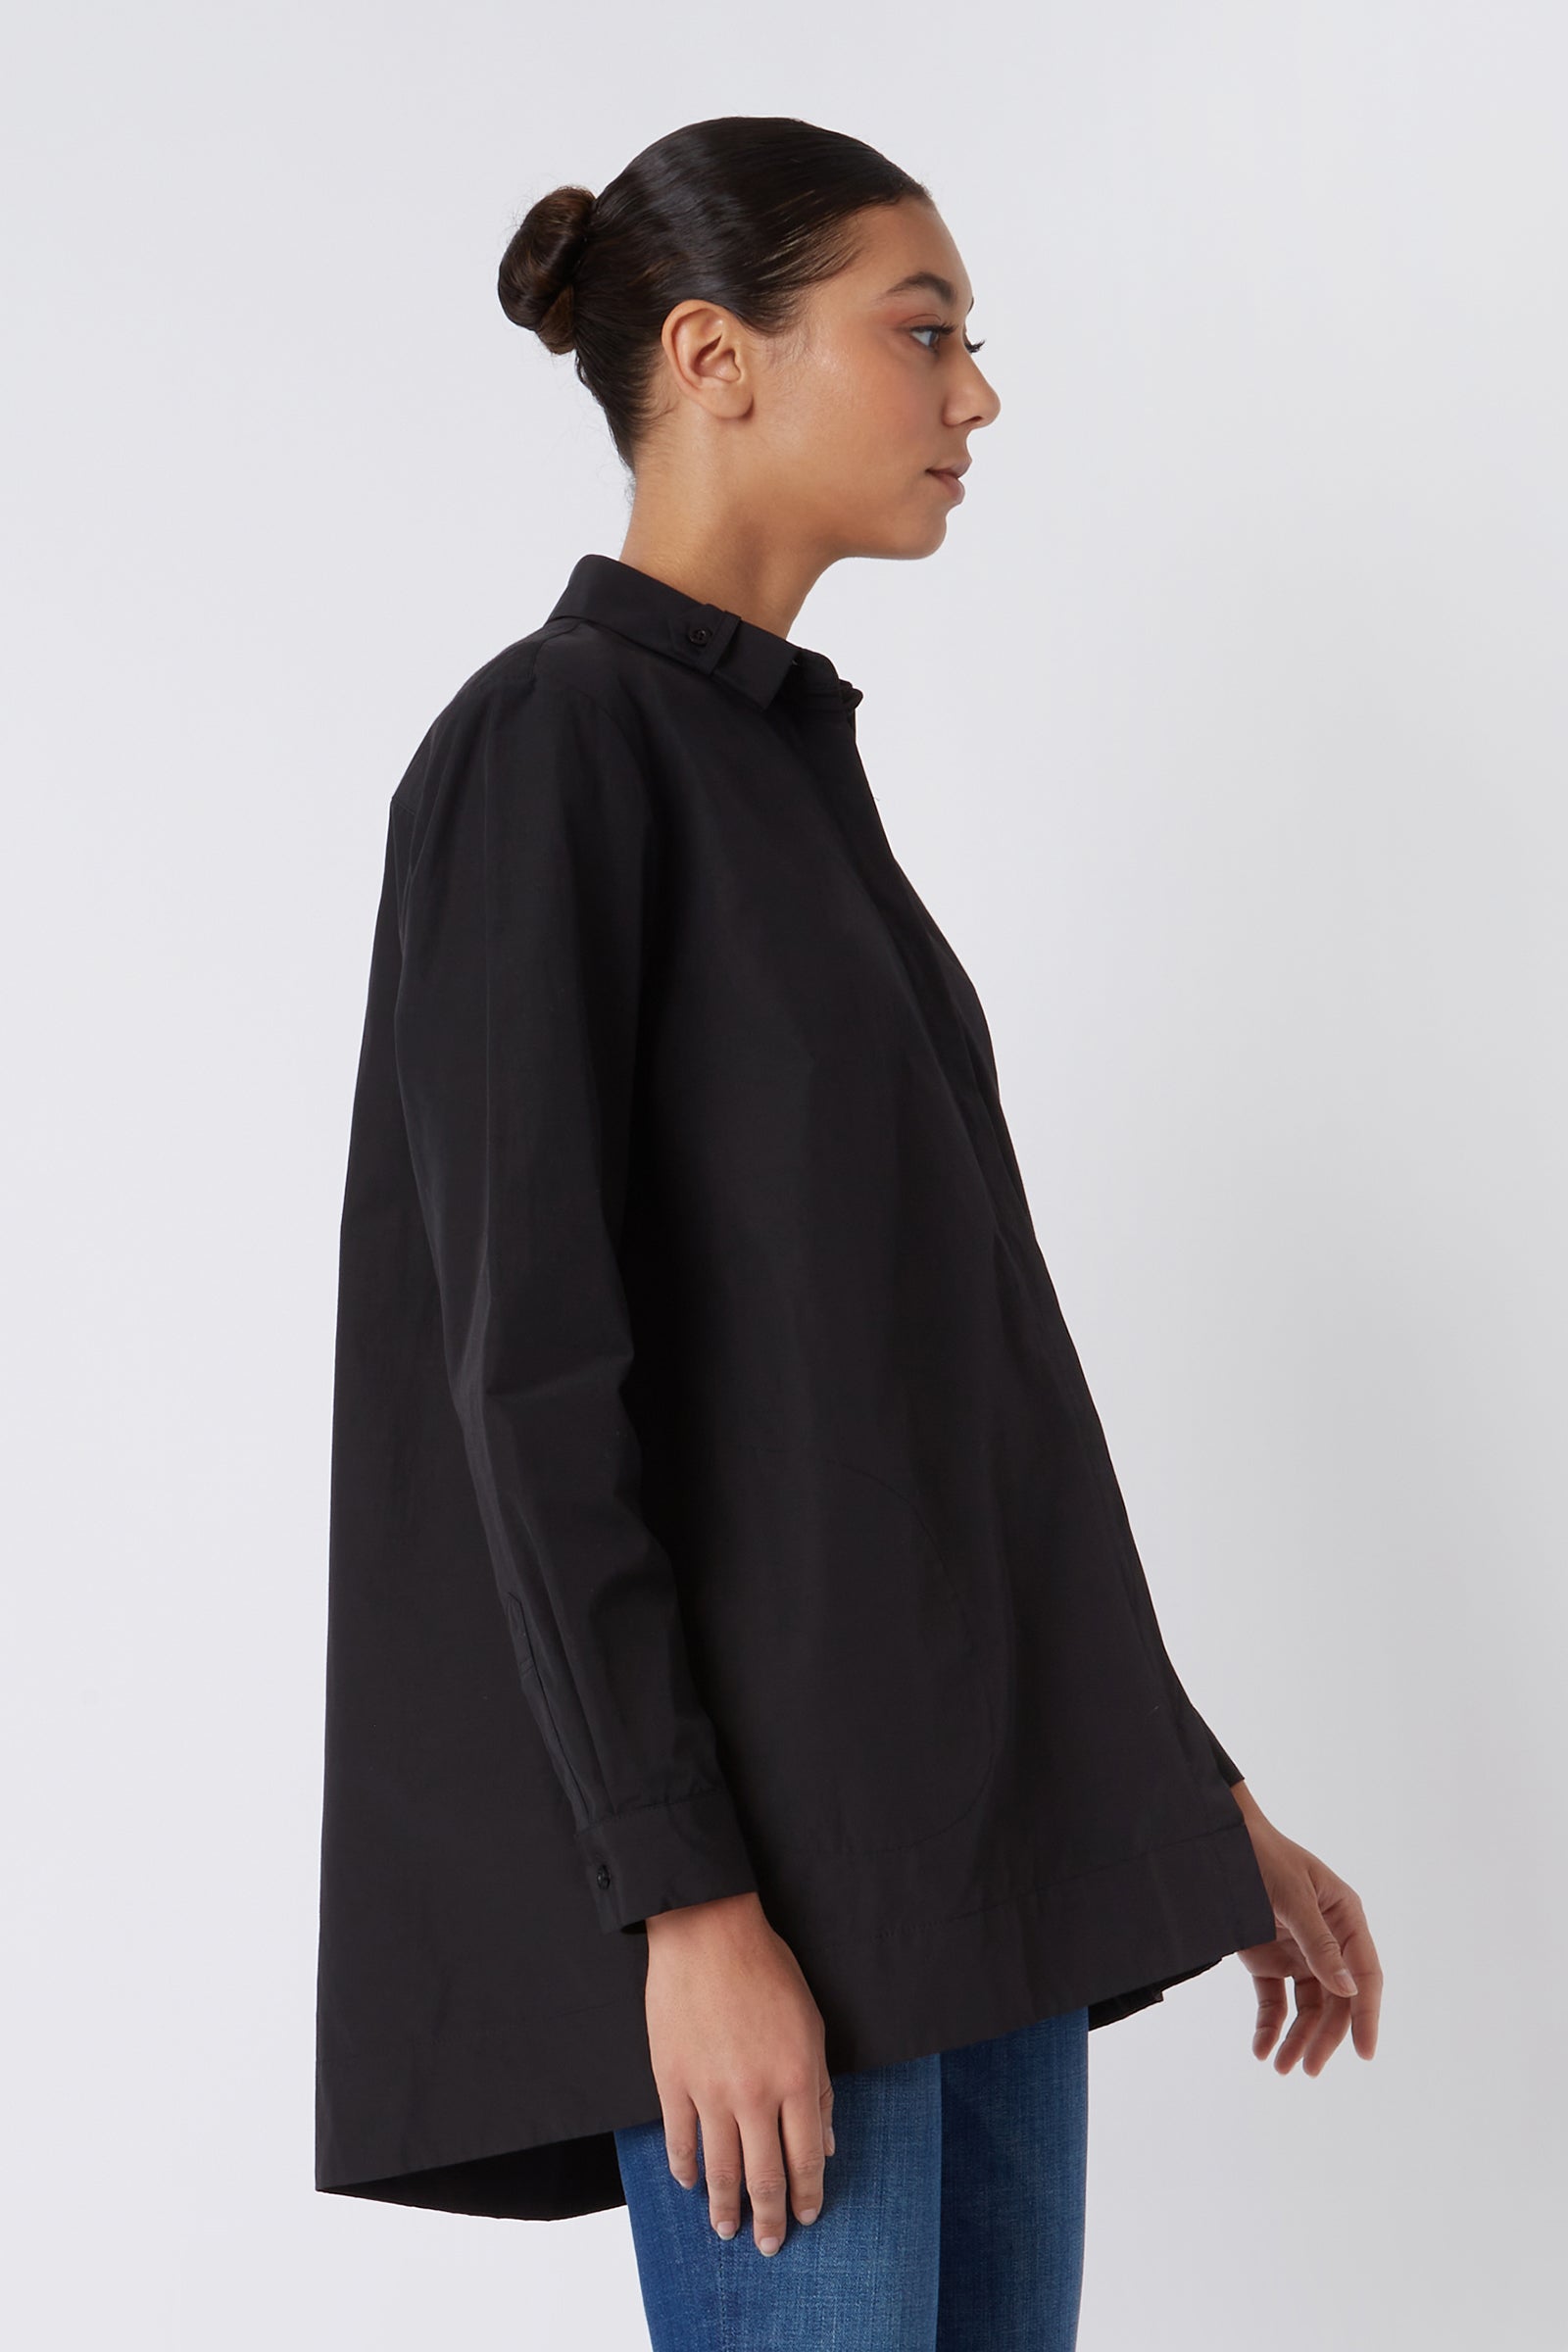 Kal Rieman Lori Tab Collar Tunic in Black on Model Cropped Side View